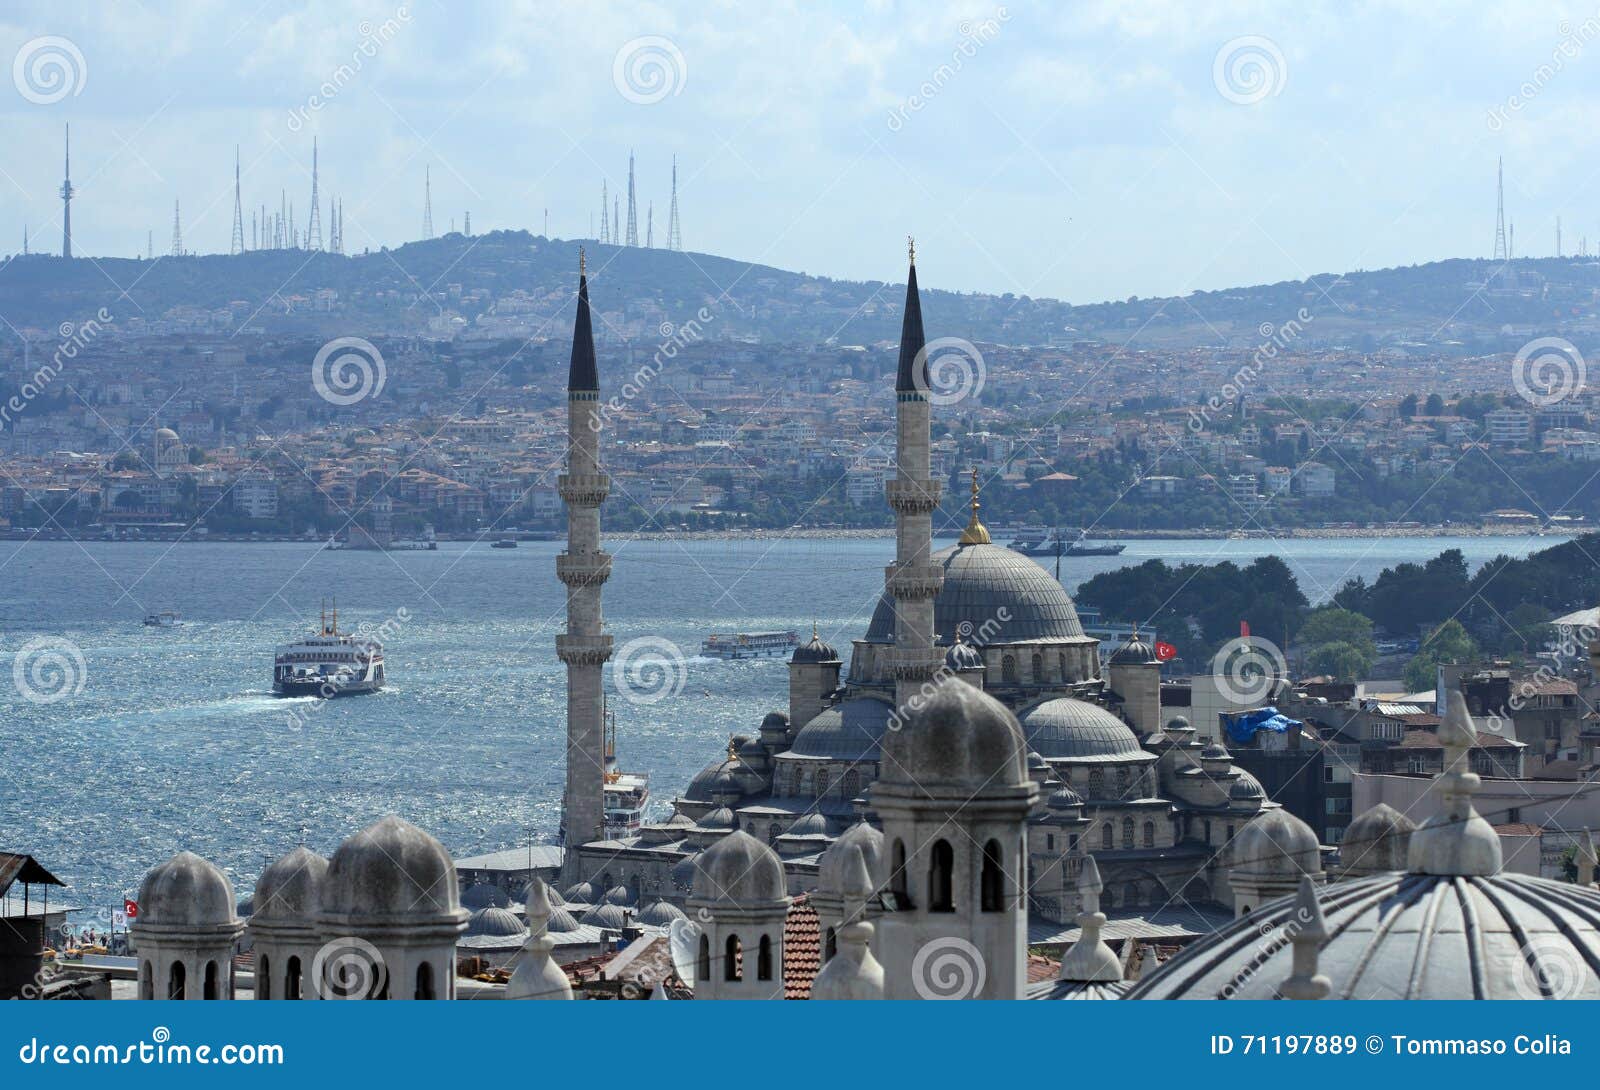 instanbul city view, turkey